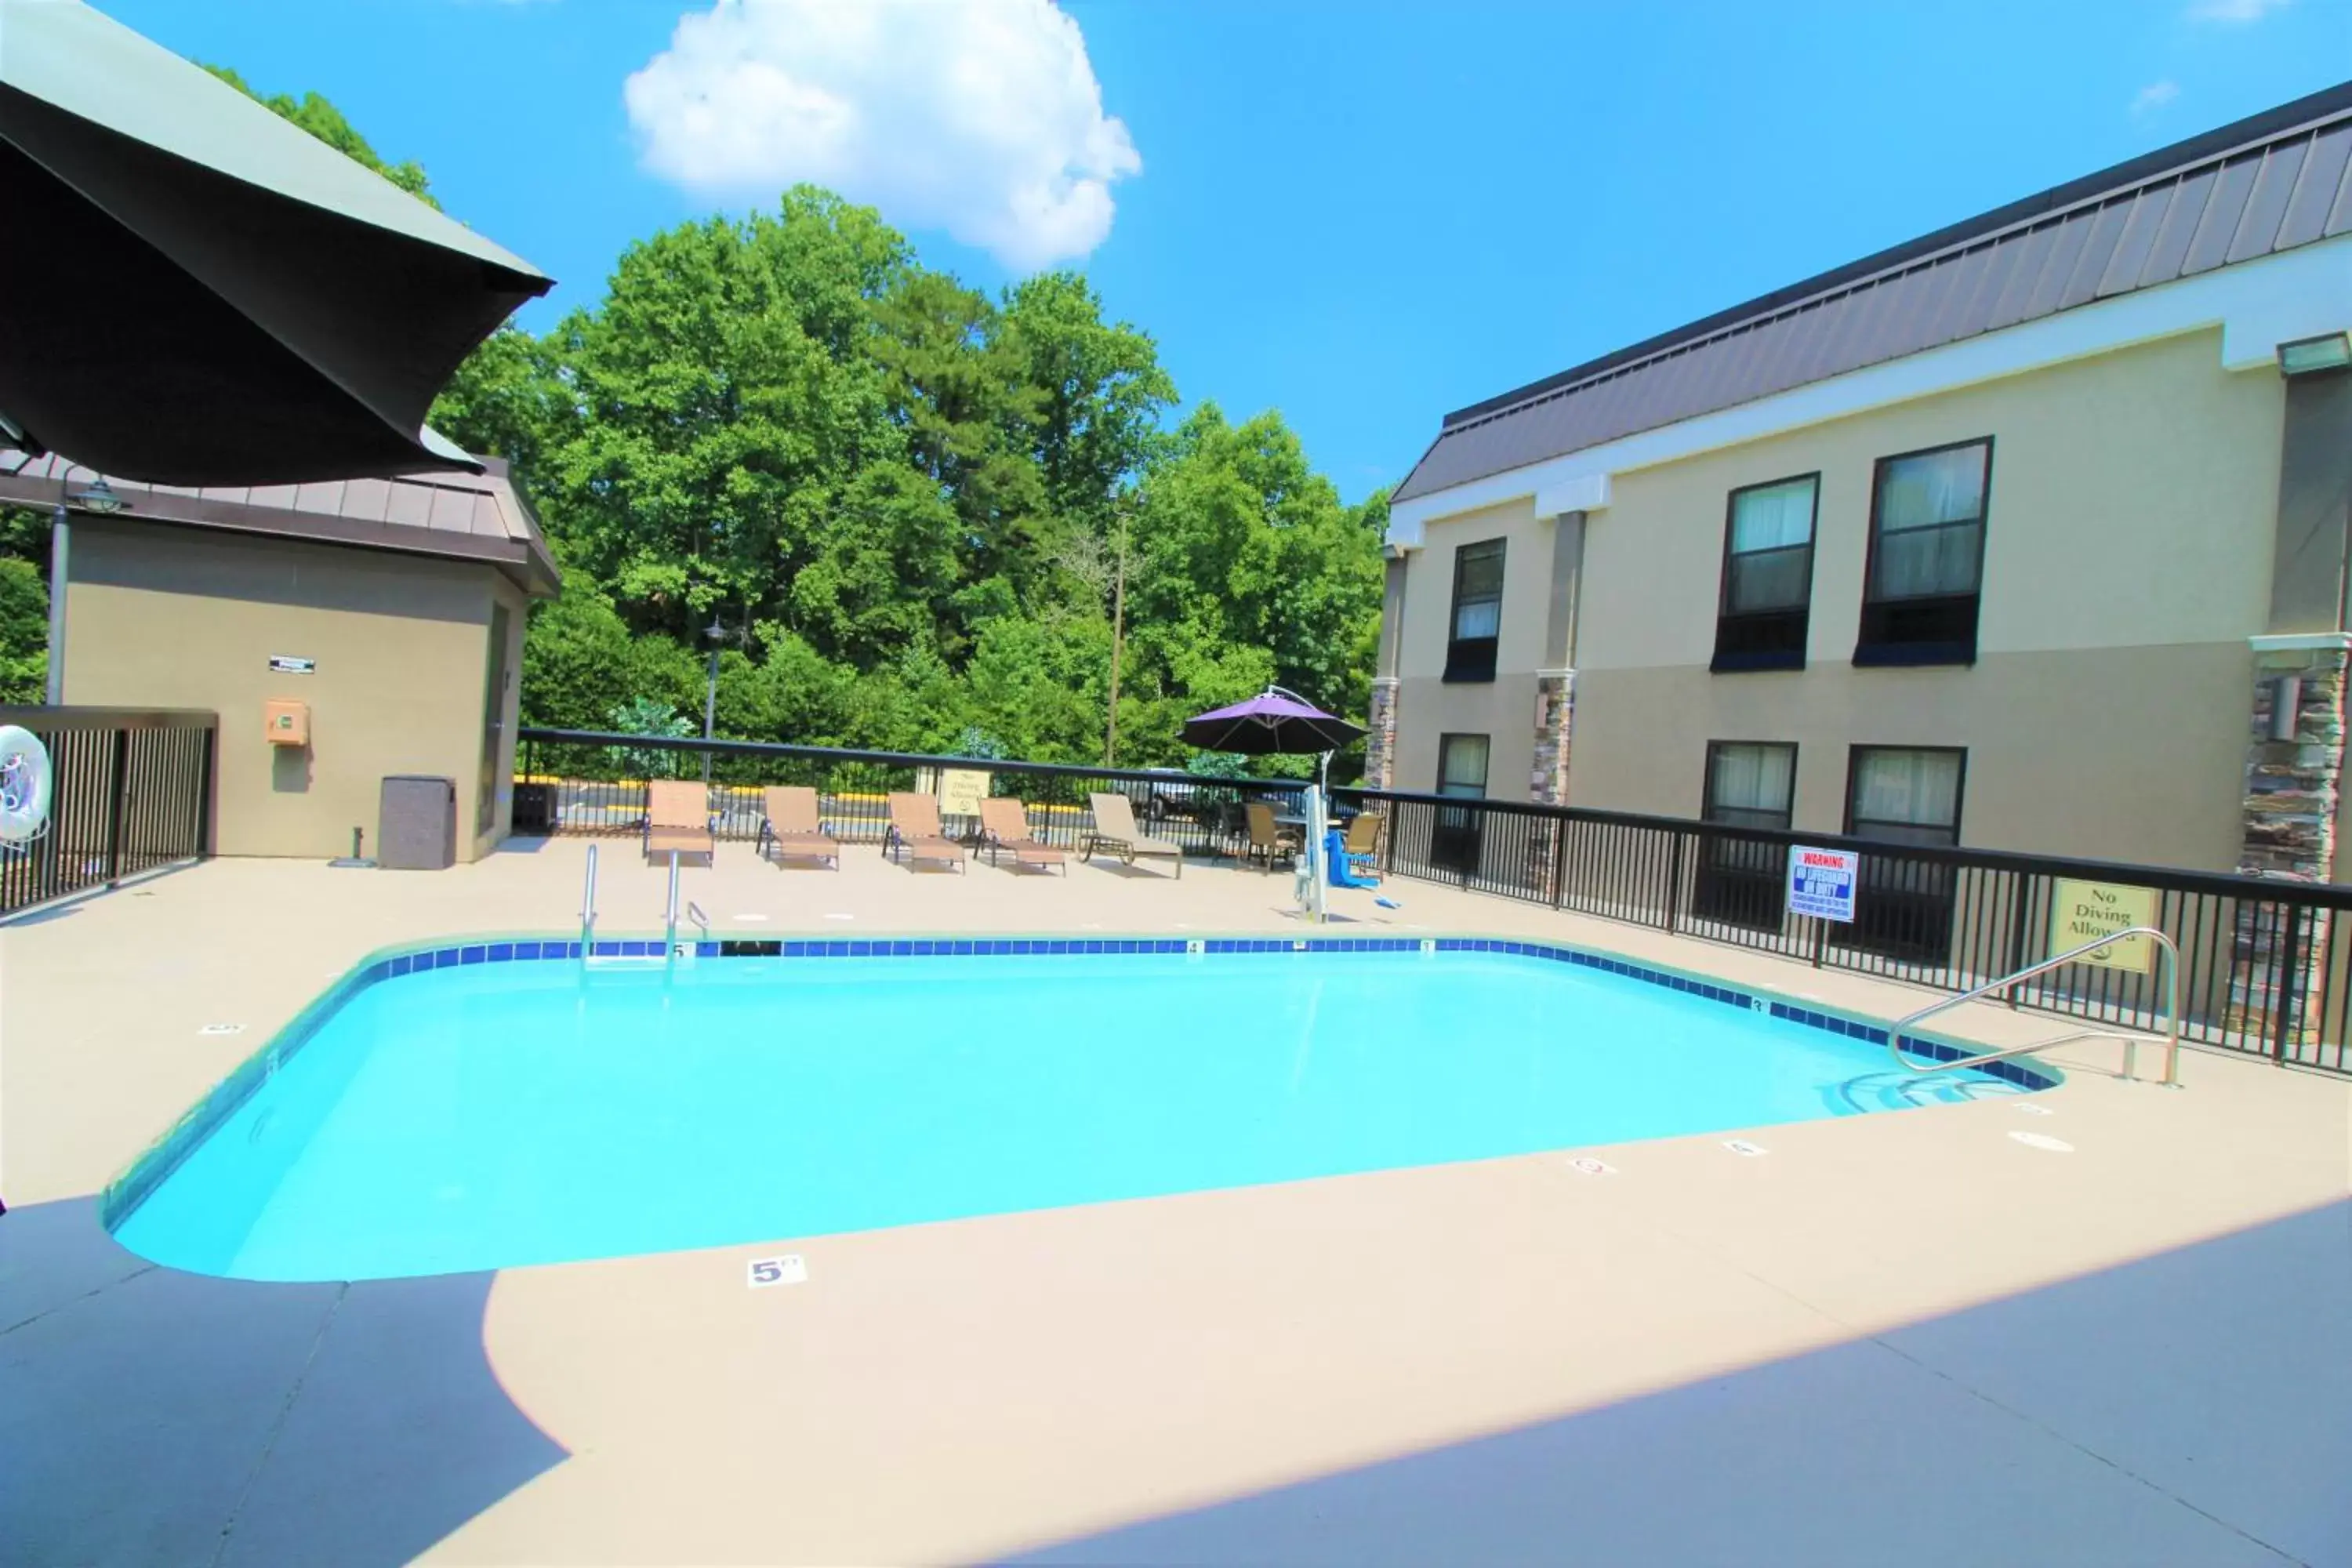 Swimming Pool in Best Western Albemarle Inn